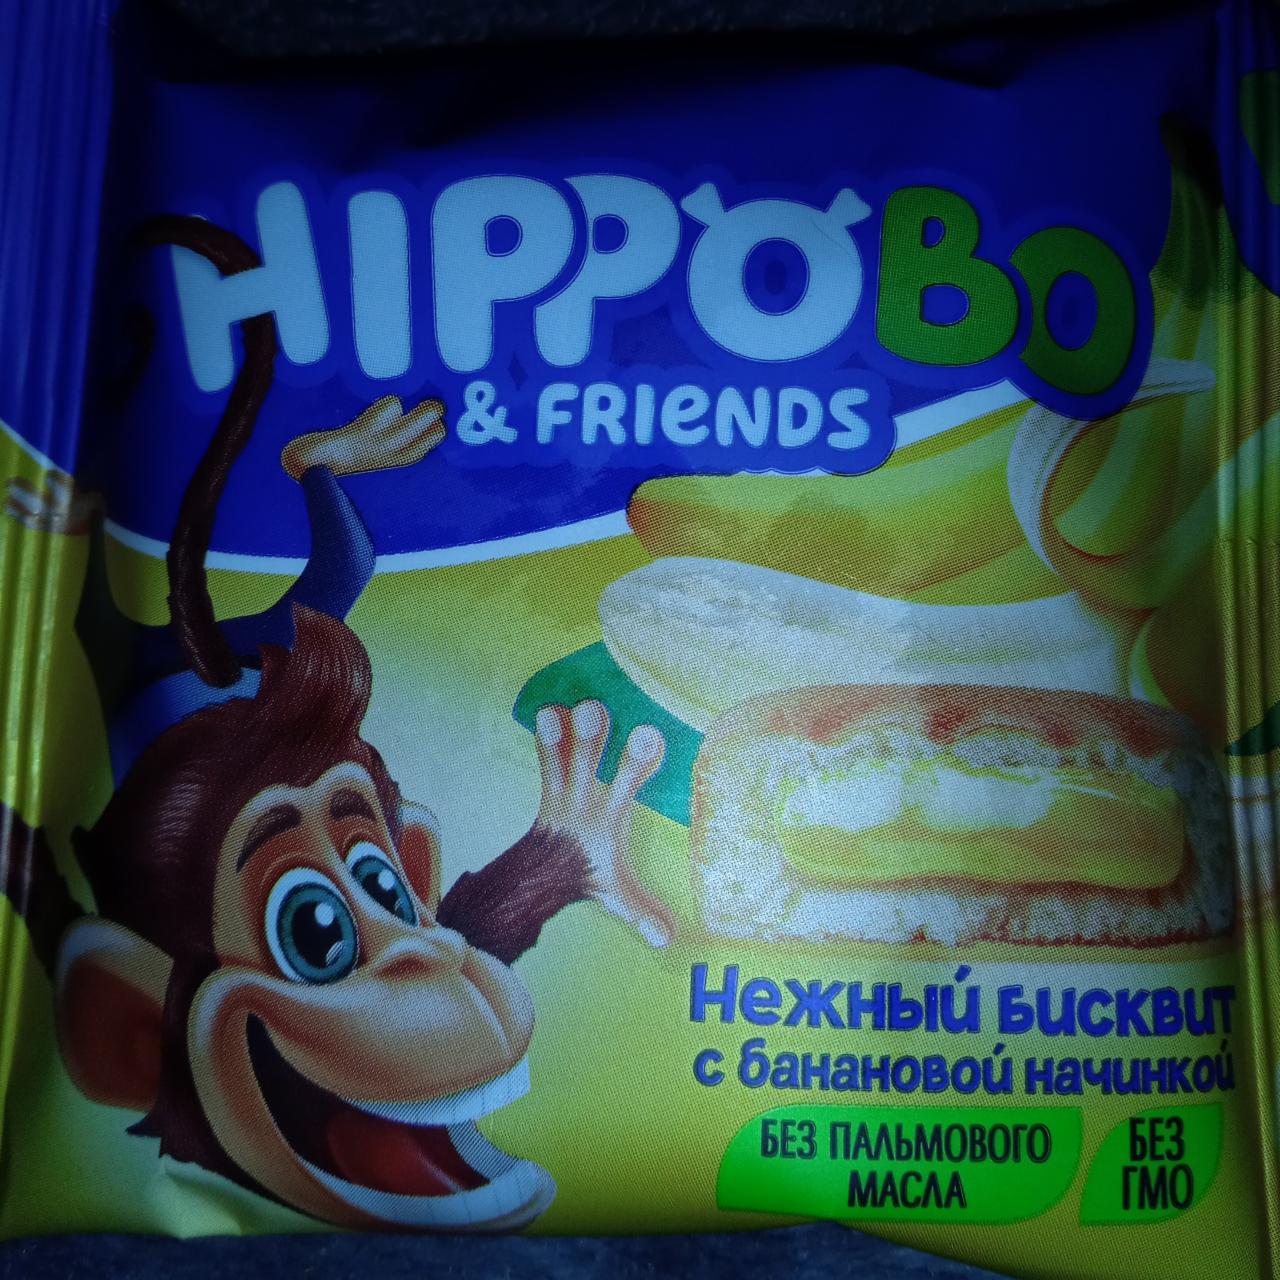 Фото - Пирожное бисквитное с банановой начинкой Hippobo&friends